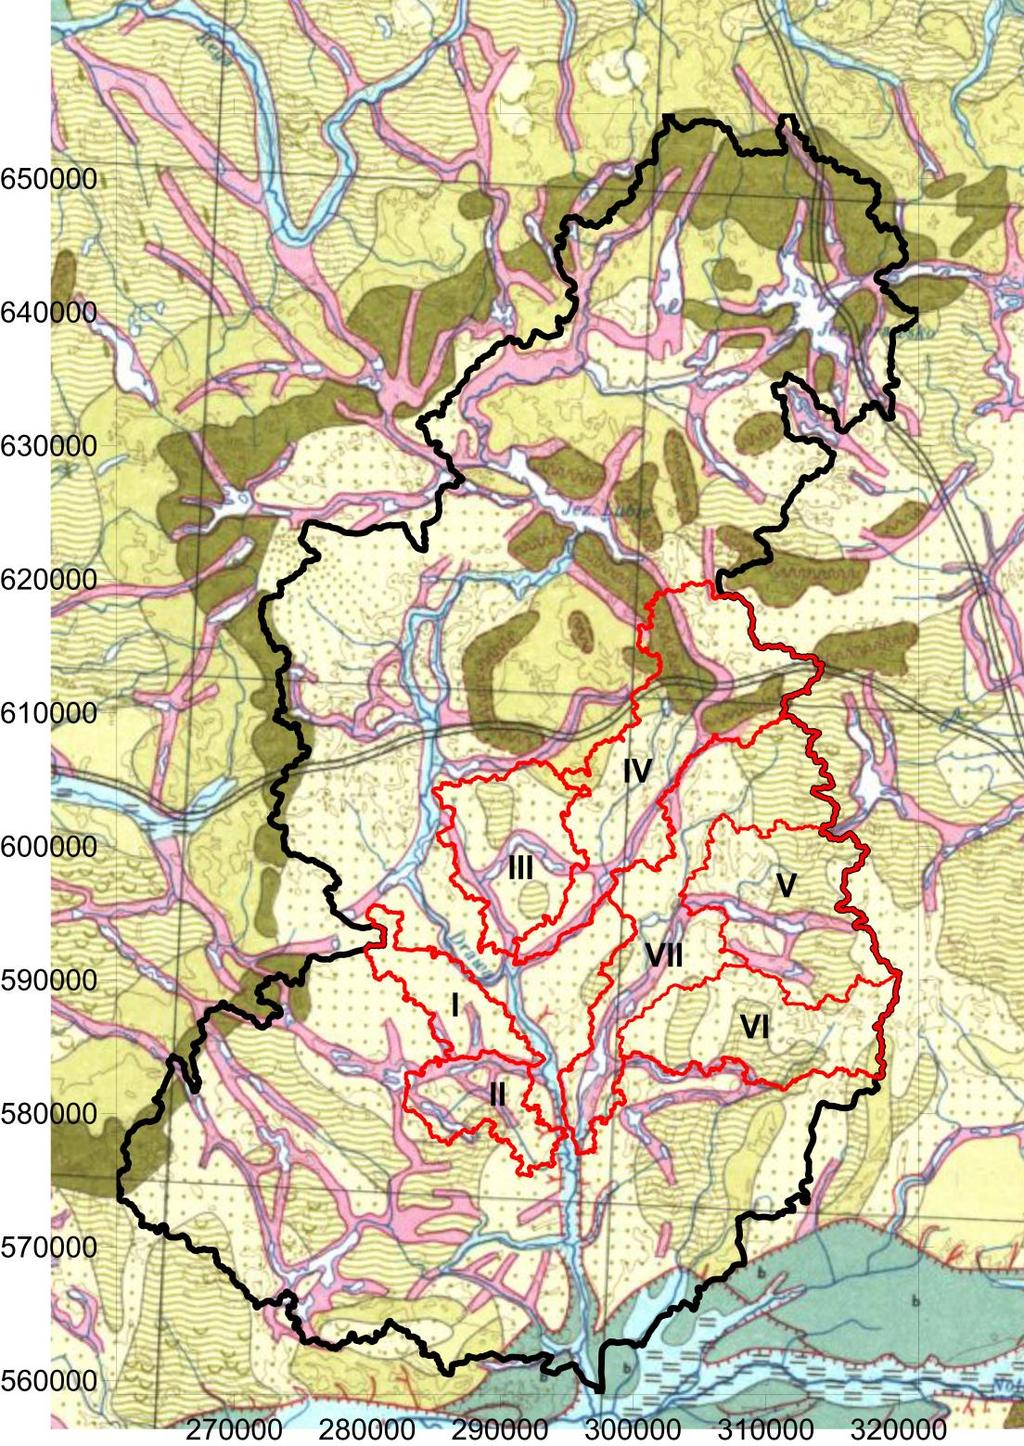 Zlewnia Drawy geomorfologia wg Przeglądowej Mapy Geomorfologicznej Polski 1: 500 000, red. L.